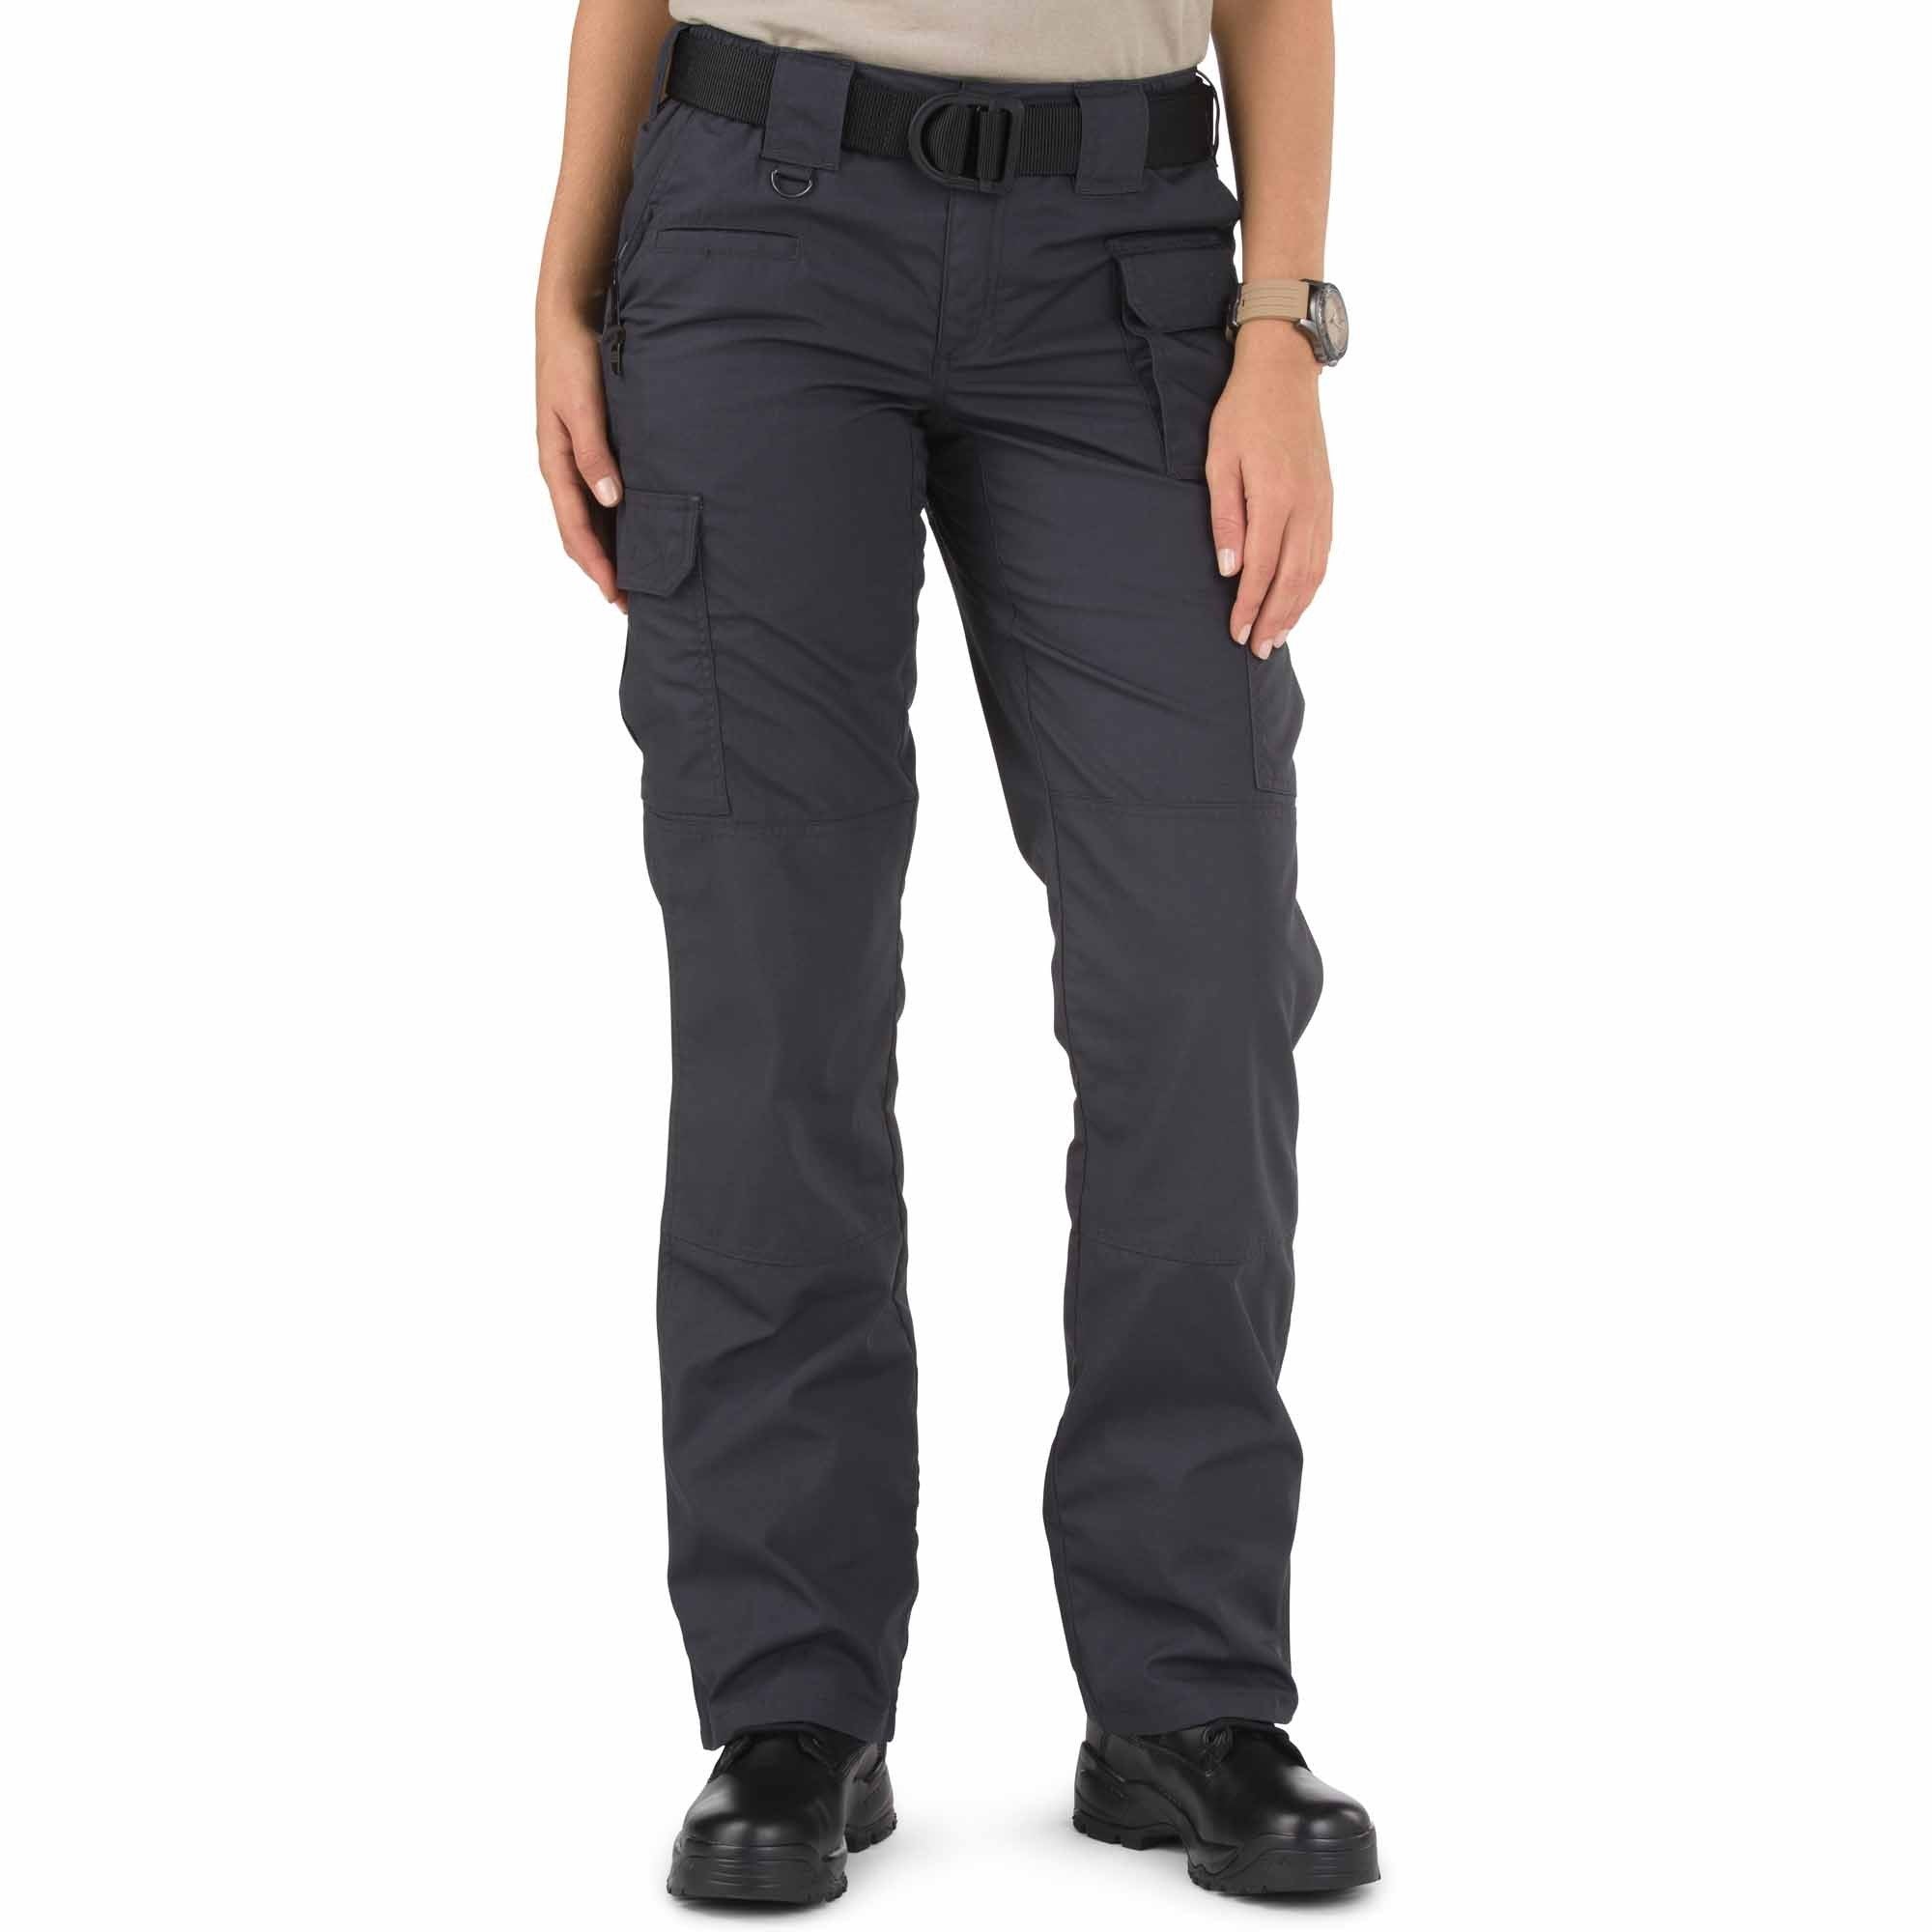 5.11 Women's TACLITE Pro Pant Charcoal Pants 5.11 Tactical 2 Regular Tactical Gear Supplier Tactical Distributors Australia